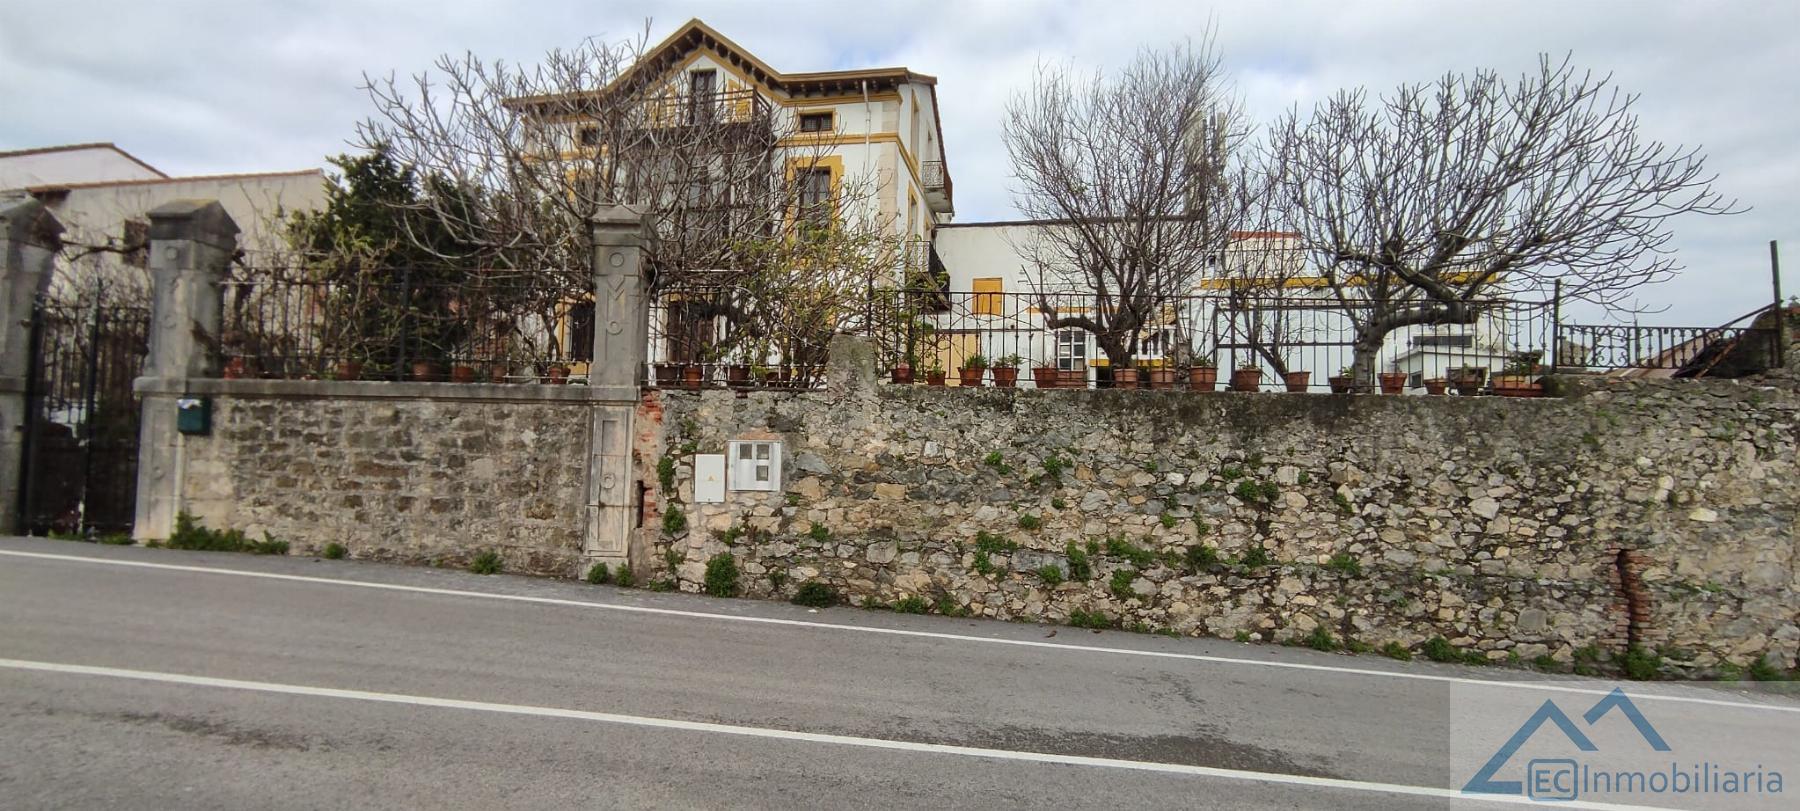 For sale of house in Santa Cruz de Bezana